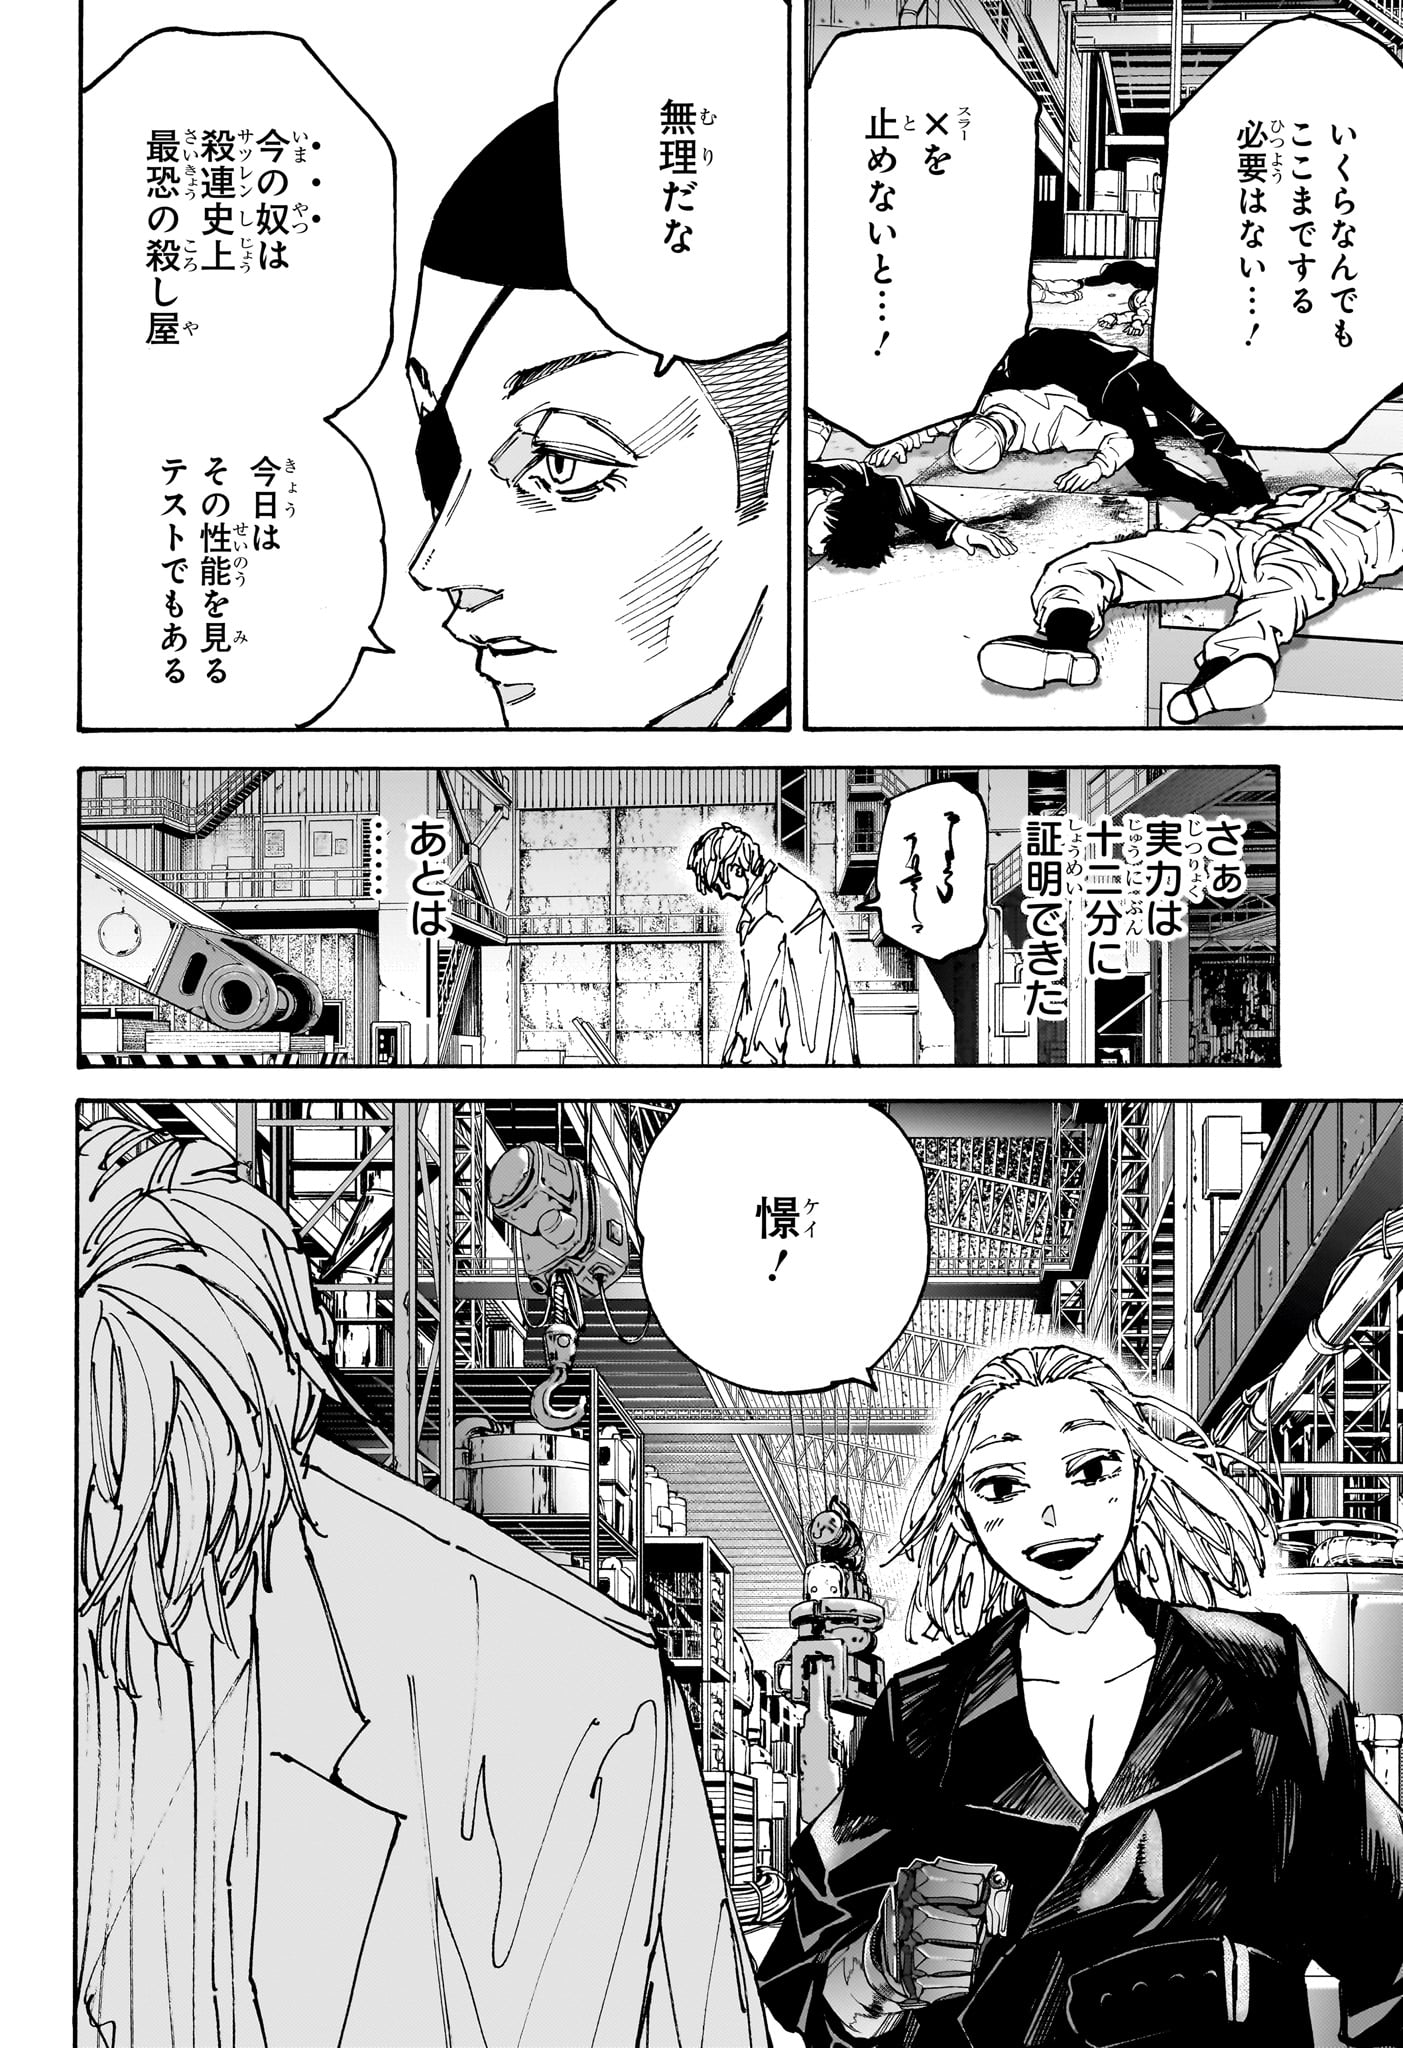 Sakamoto Days - Chapter 172 - Page 4